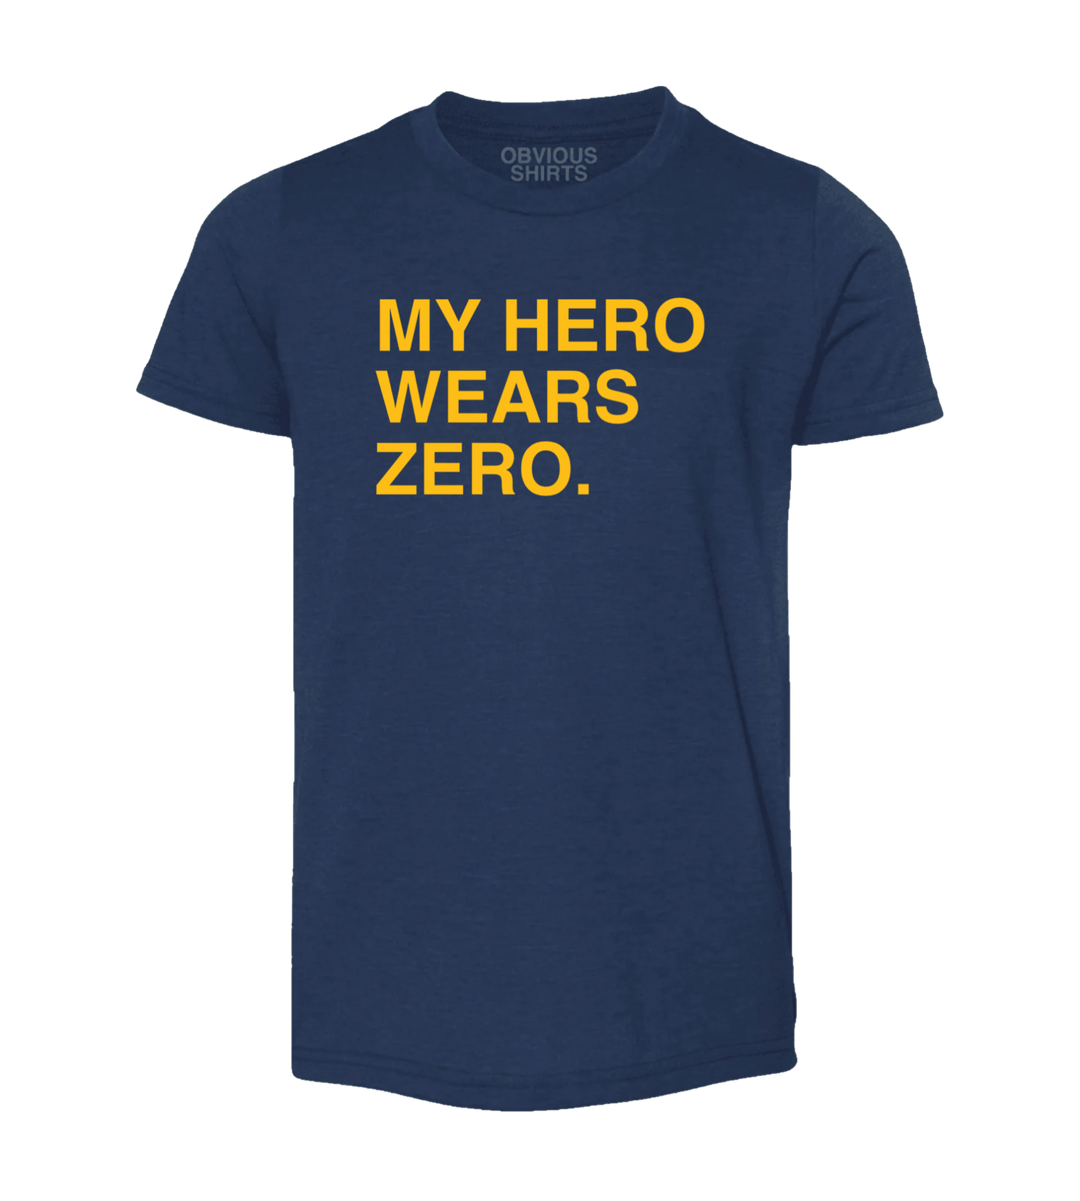 MY HERO WEARS ZERO. (YOUTH) - OBVIOUS SHIRTS